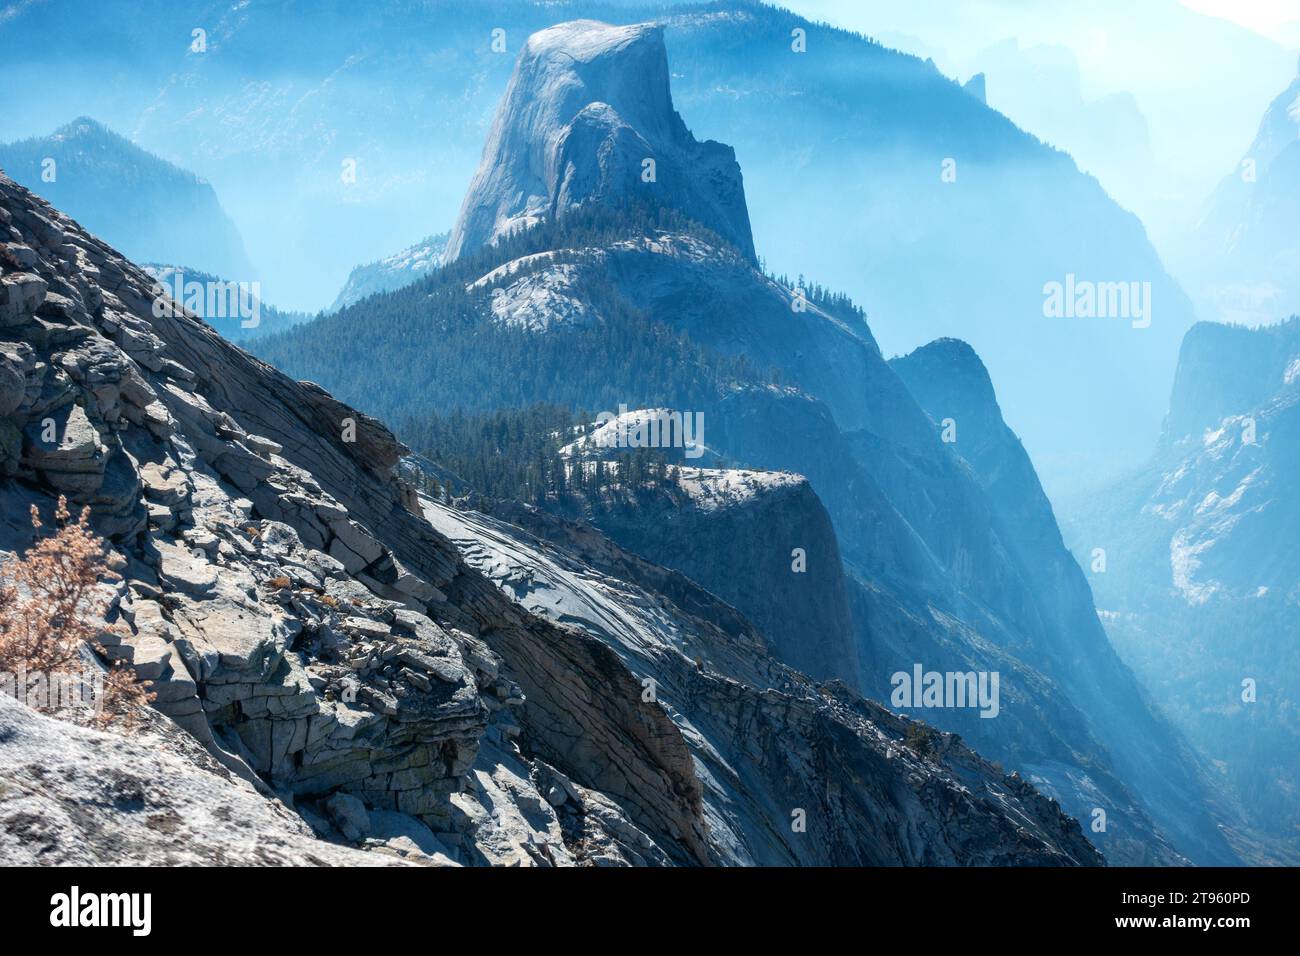 Granite Mountain Peak Half Dome vue arrière. Vue aérienne surréaliste du paysage de la vallée du parc national de Yosemite, remplie de brume de fumée de feu contrôlée Banque D'Images